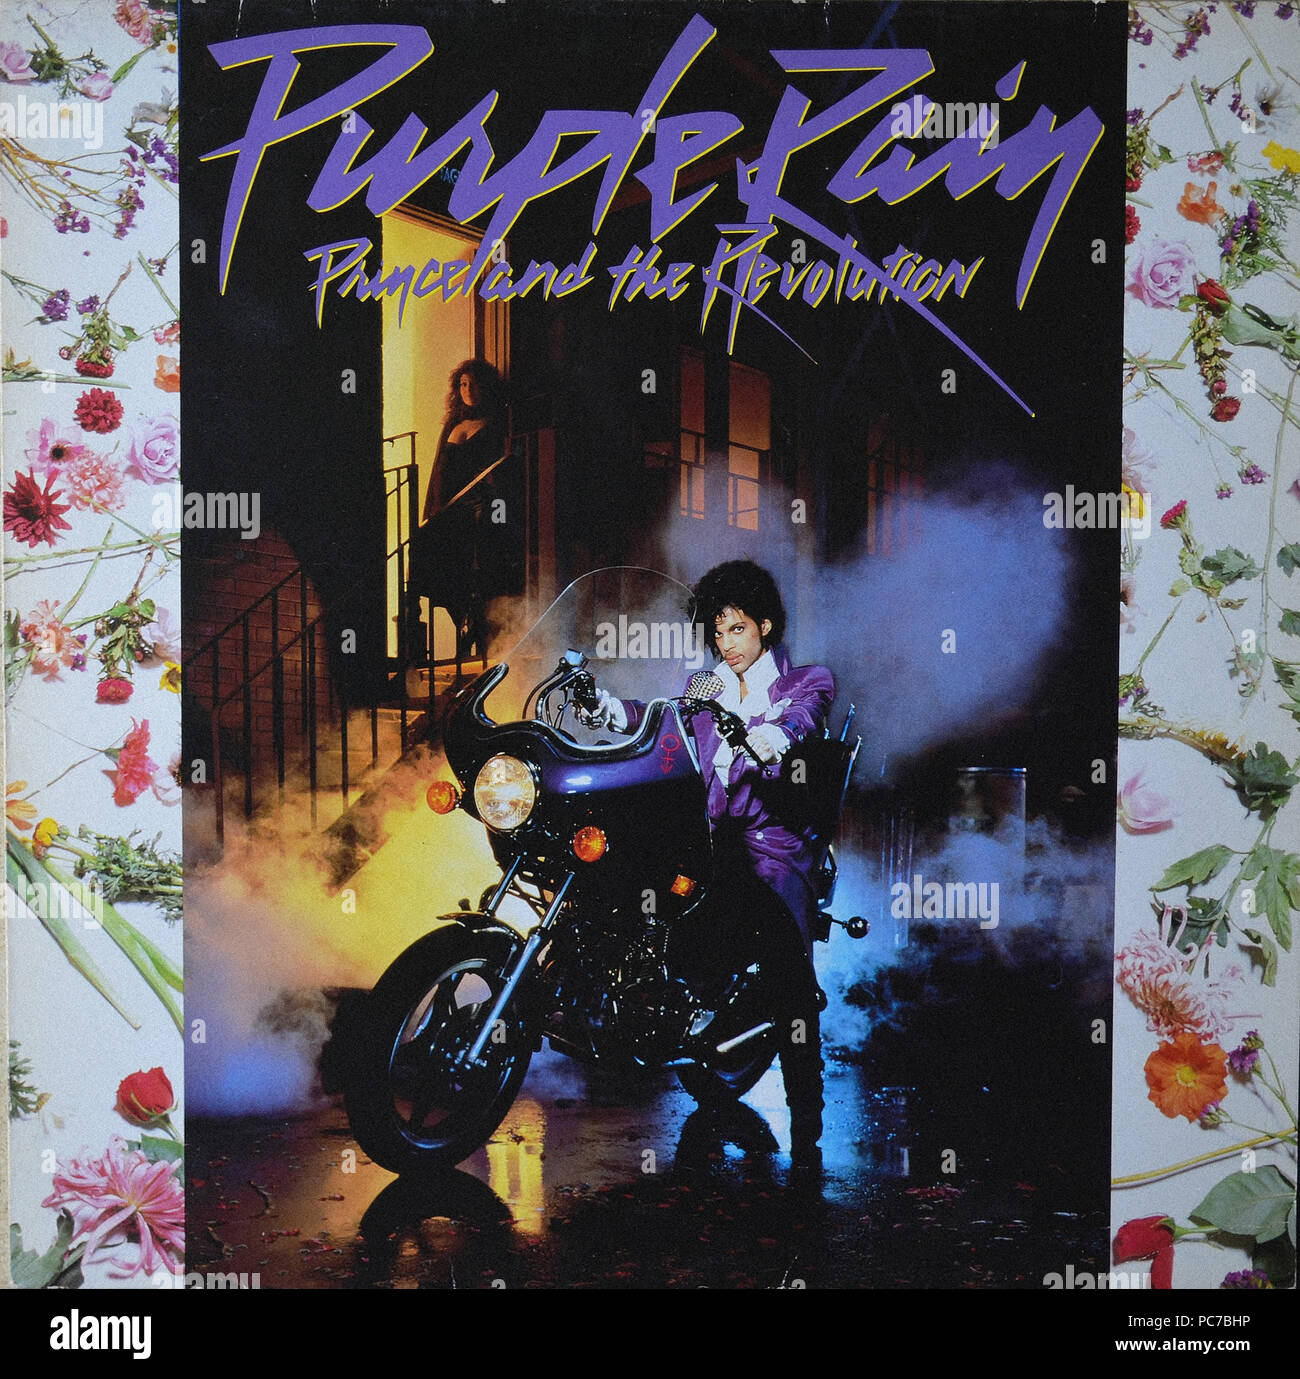 Prince et la révolution - Purple Rain - couverture de l'album vinyle  vintage Photo Stock - Alamy